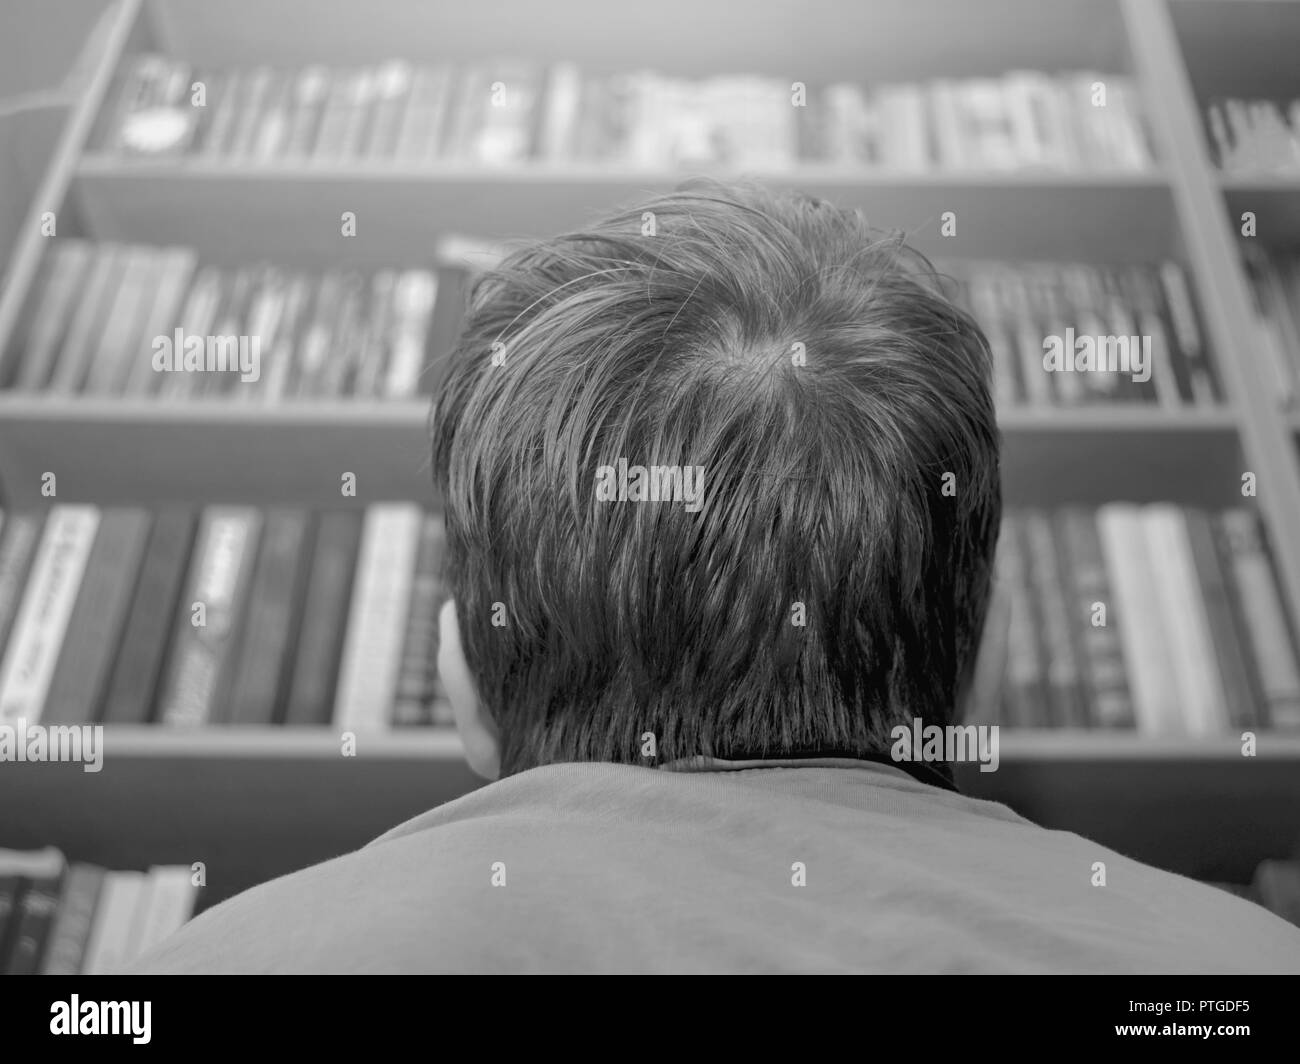 Ragazzo, studente cercando gli scaffali a casa, a scuola, in biblioteca o in una libreria. L'istruzione accademica, rigido concetto di apprendimento. Foto Stock